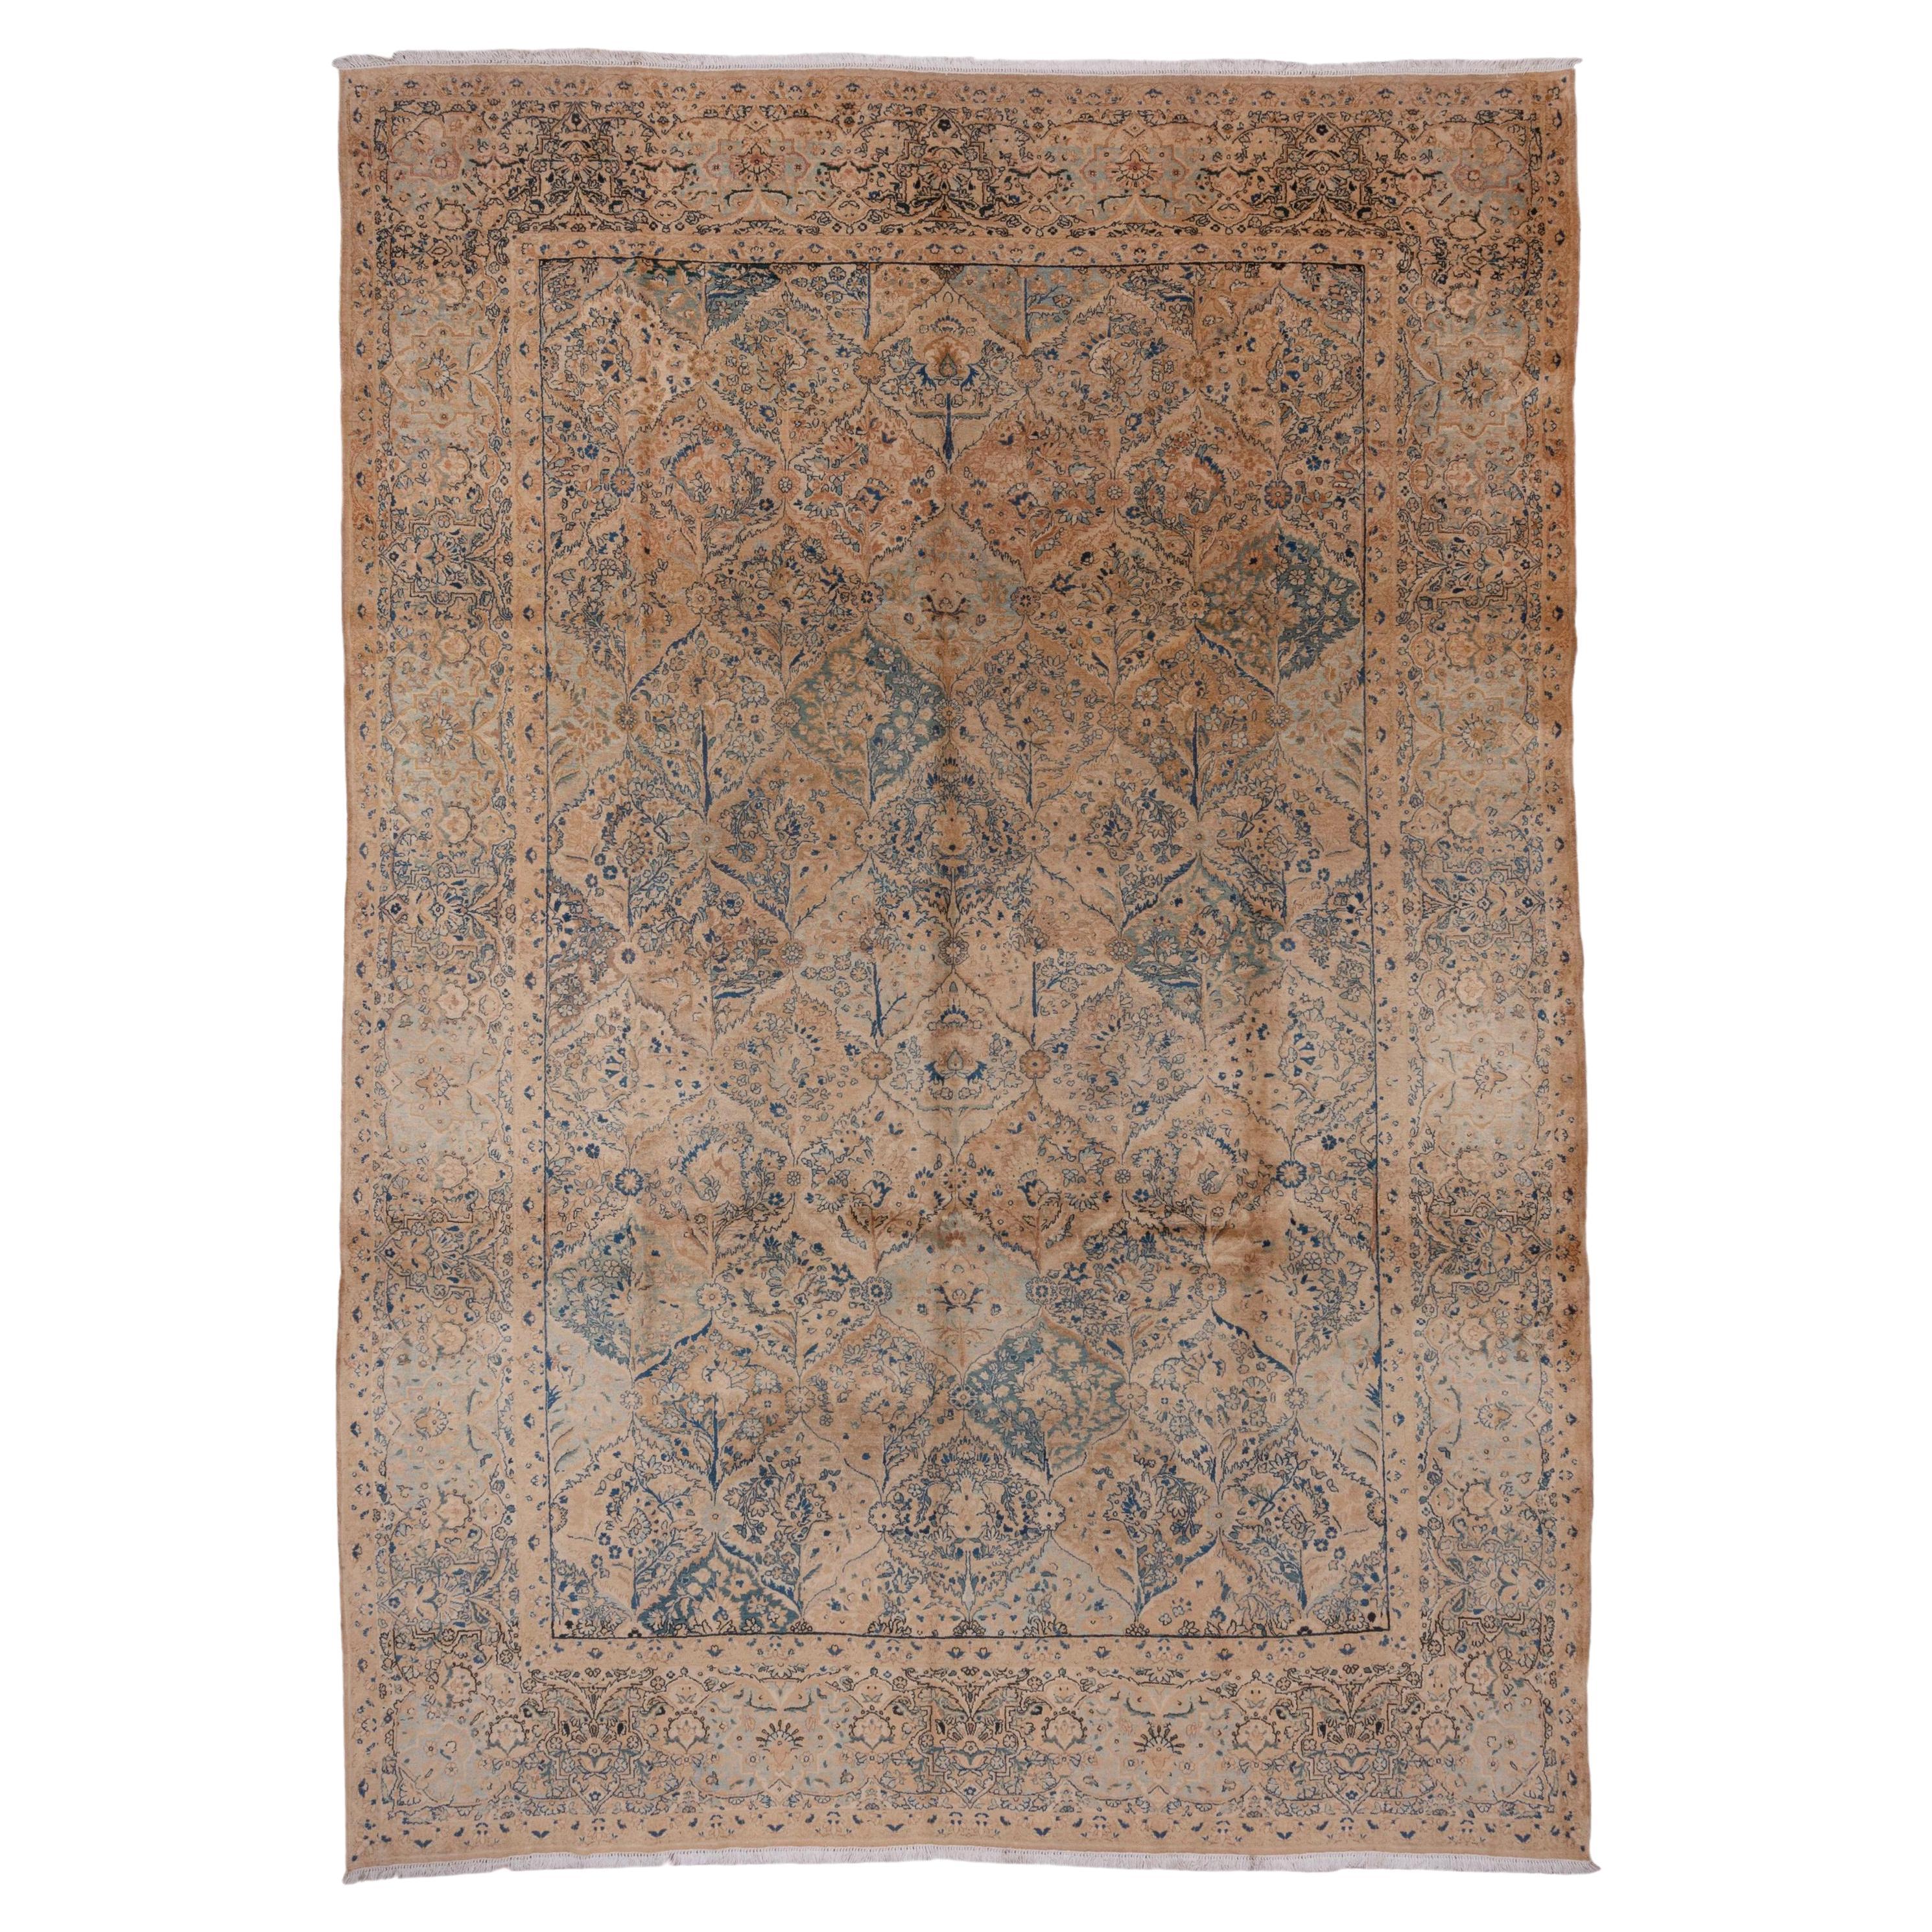 Classic Antique Persian Kerman Carpet, Beige & Blue Palette, circa 1930s